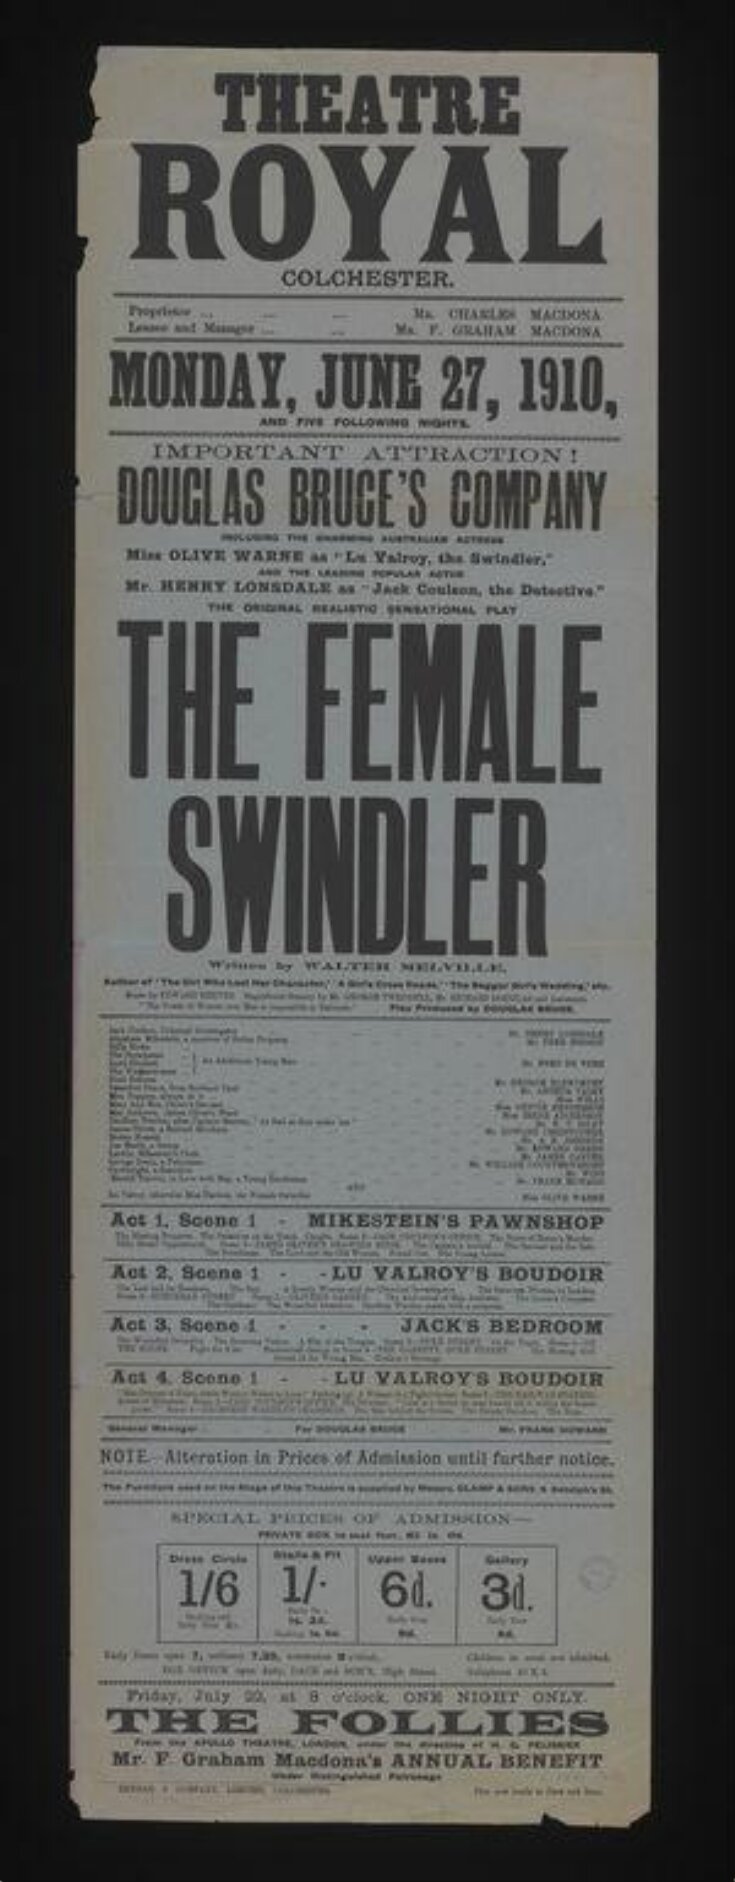 The Female Swindler poster image